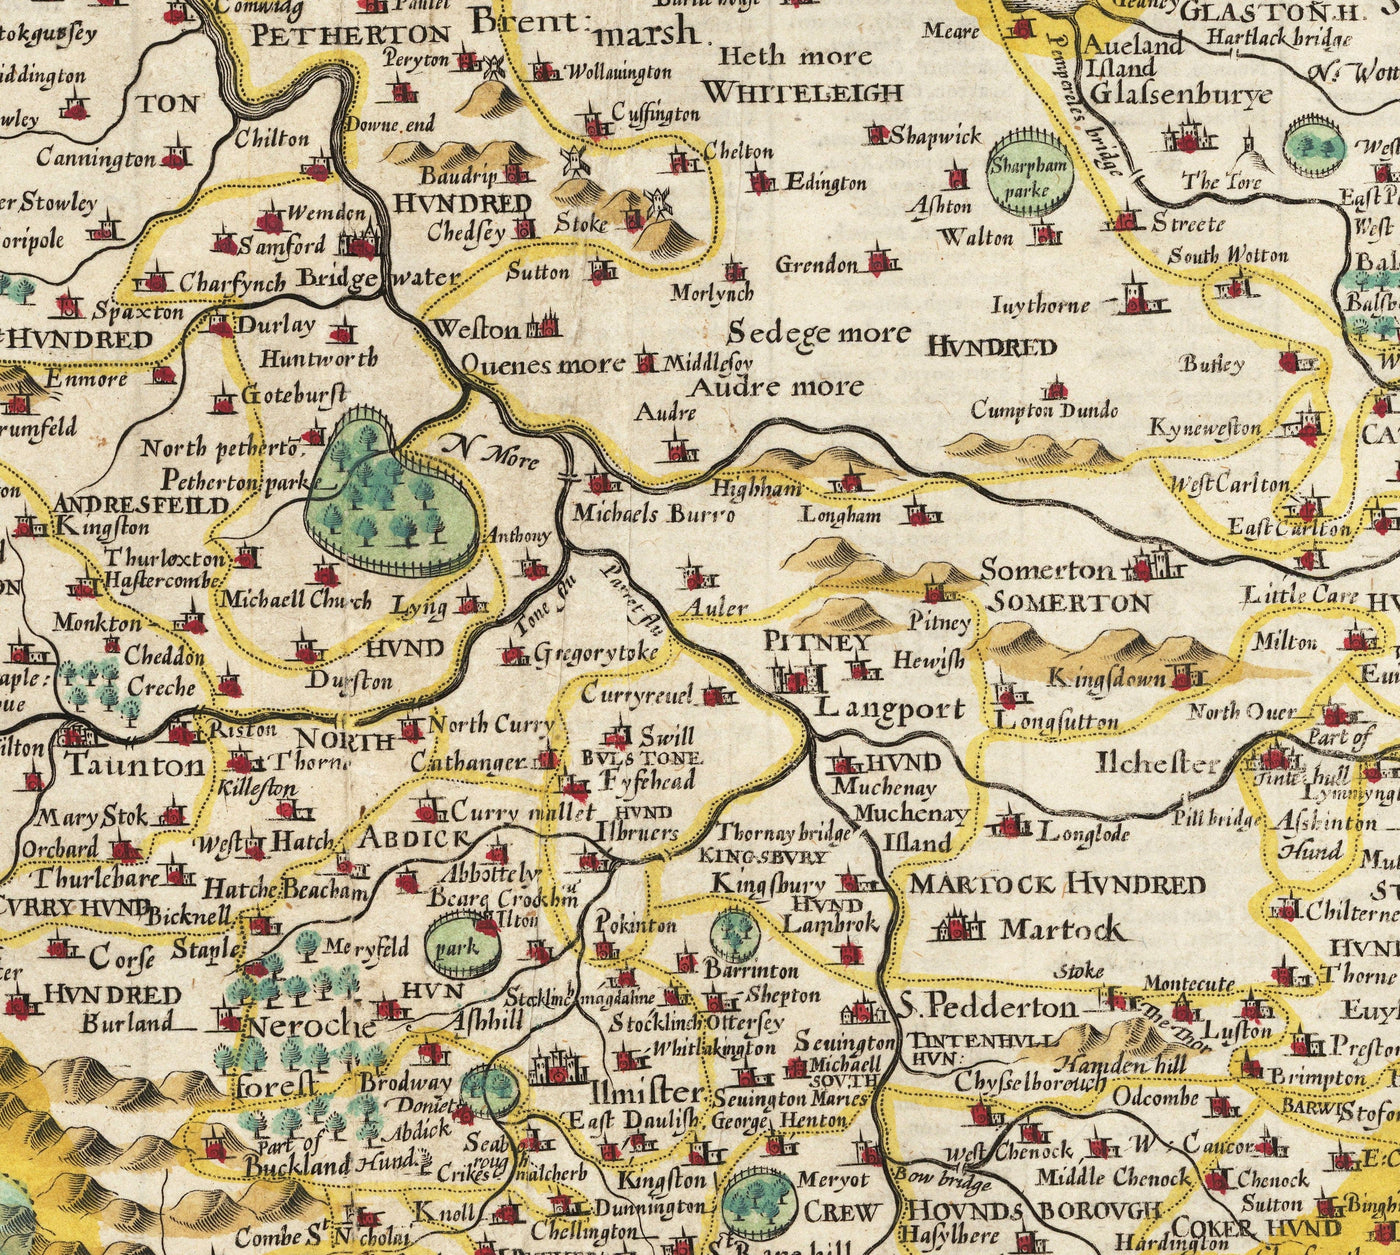 Viejo mapa de Somerset en 1611 por John Speed ​​- Bath, Portishead, Weston-Super-Mare, Taunton